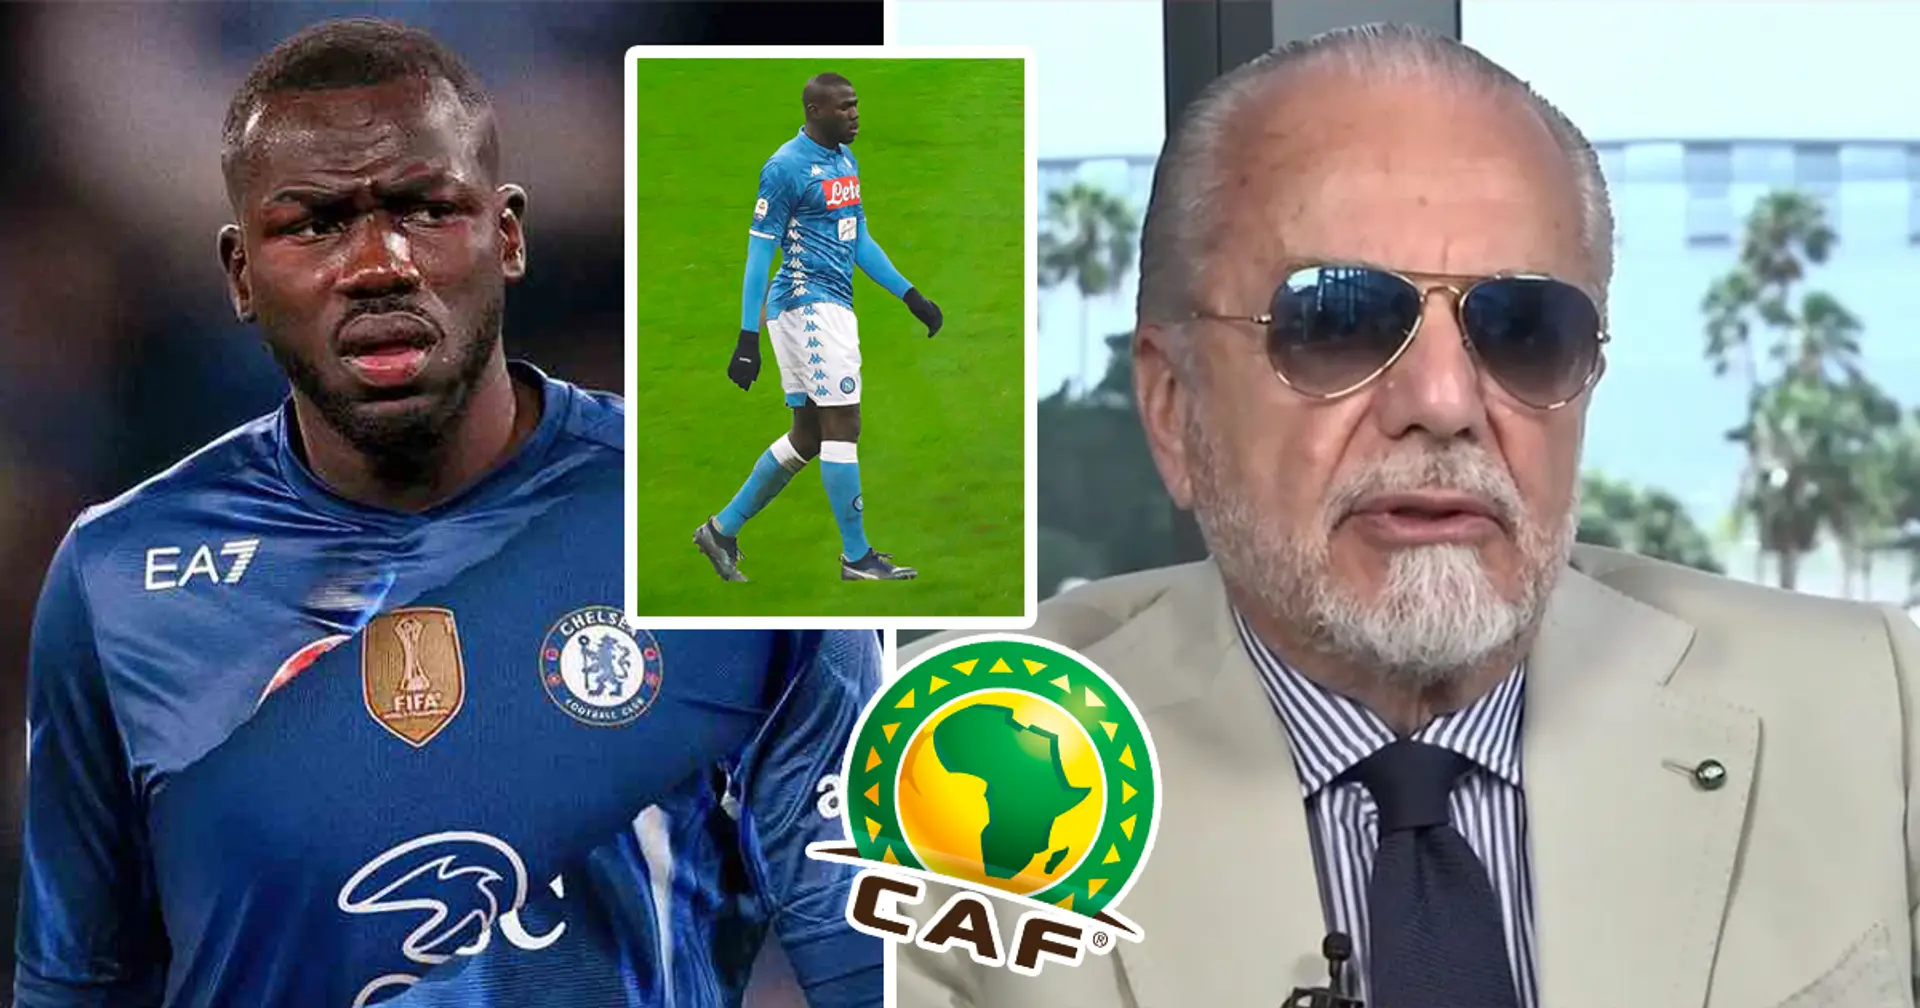 "Reden Sie nicht mehr mit mir über Afrikaner": Neapel-Präsident sagt, er werde keine afrikanischen Spieler mehr verpflichten